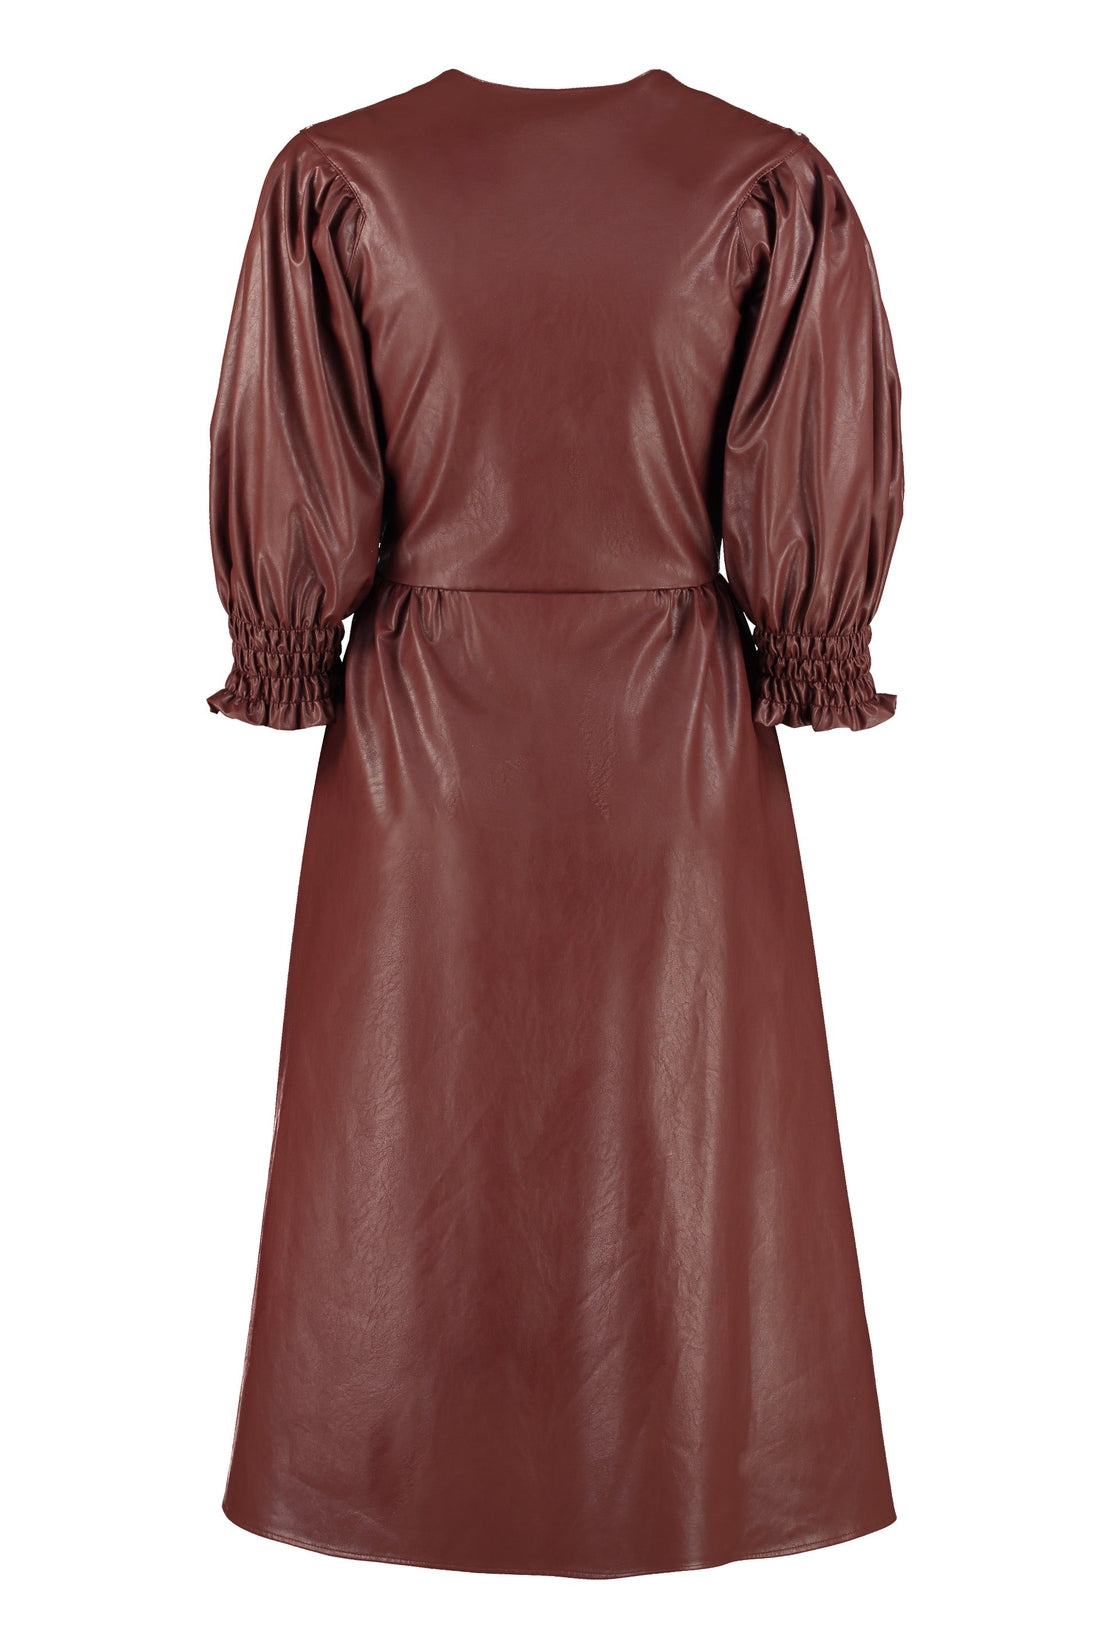 MSGM-OUTLET-SALE-Faux leather dress-ARCHIVIST